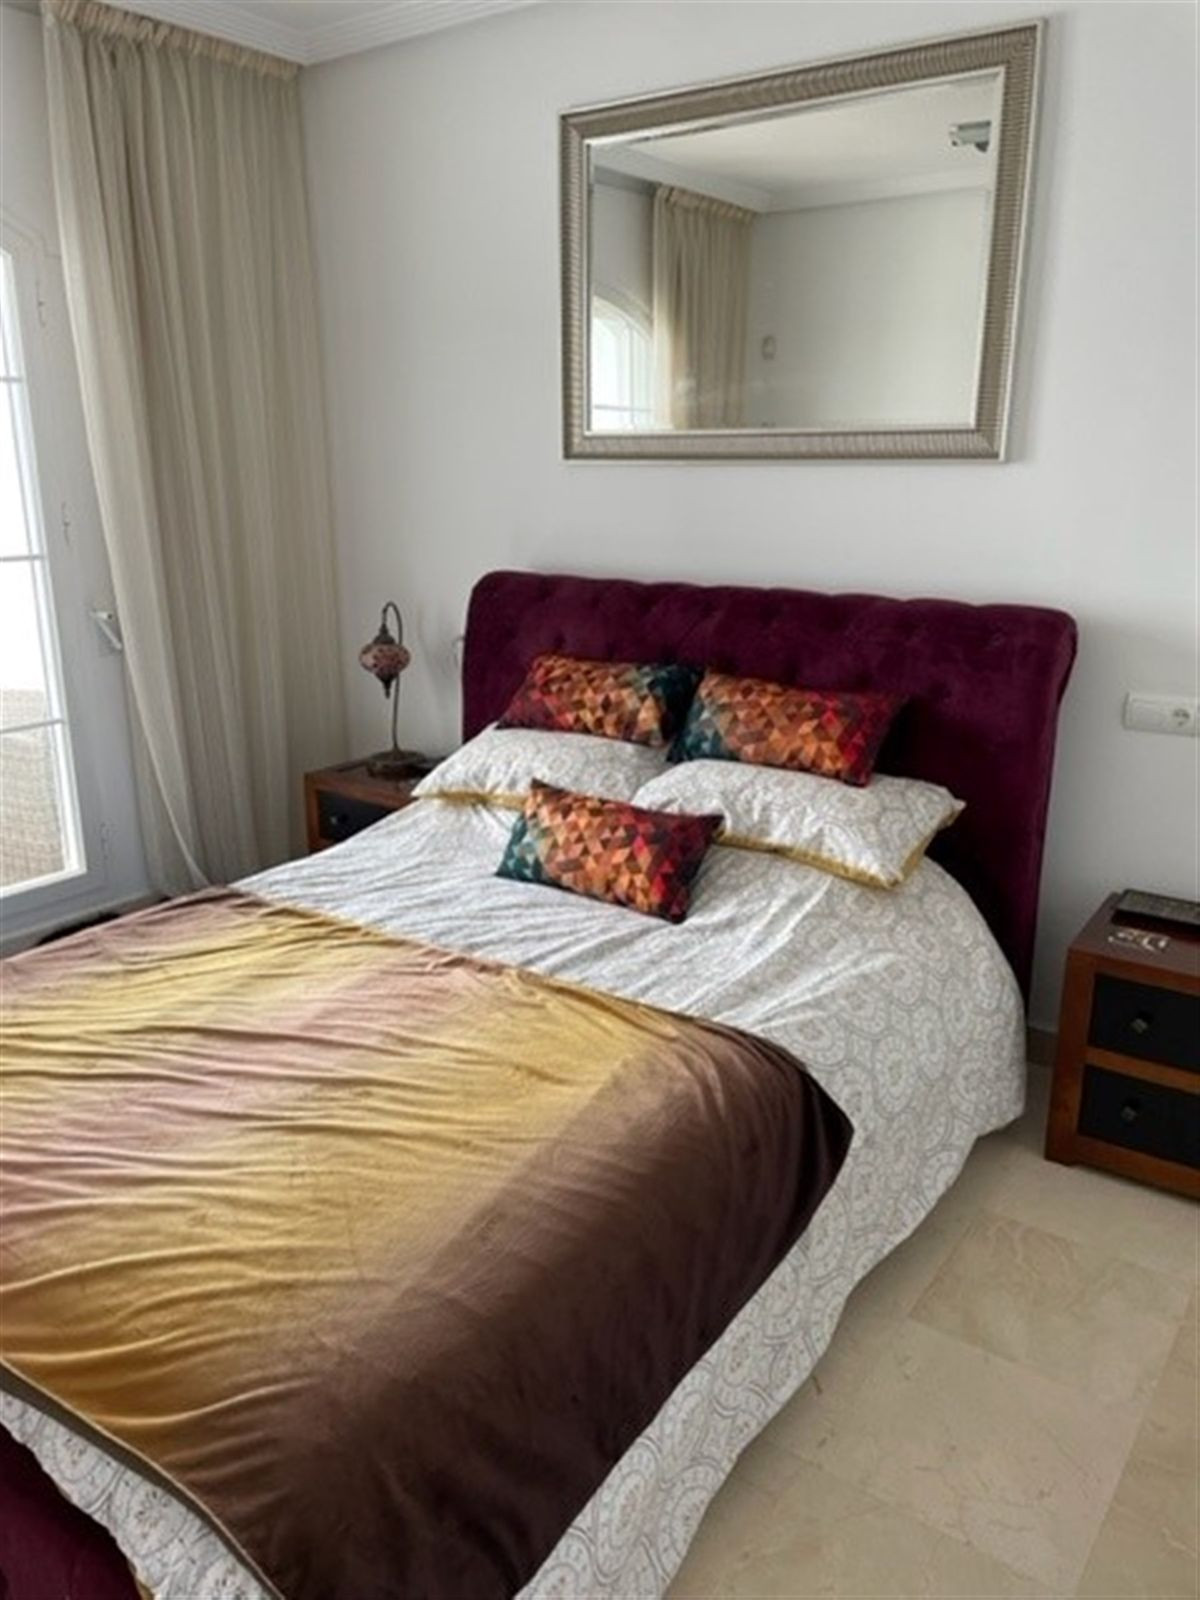 3 bed Property For Sale in Benahavis, Costa del Sol - thumb 11